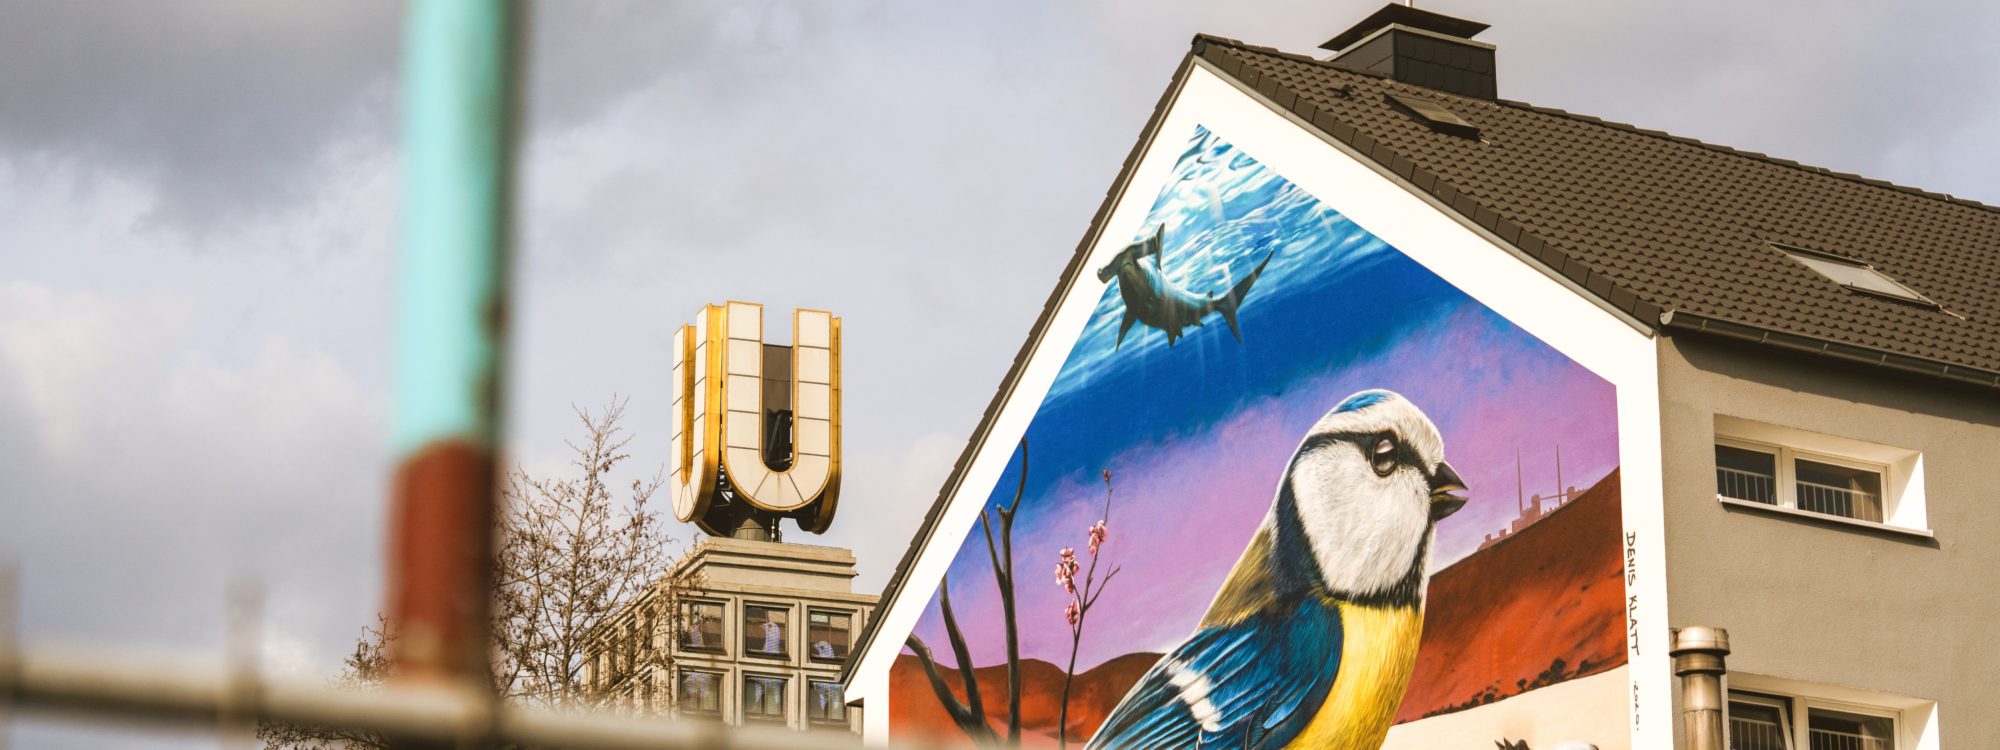 Das Bild zeigt das Dortmunder U hinter einem Grafitti